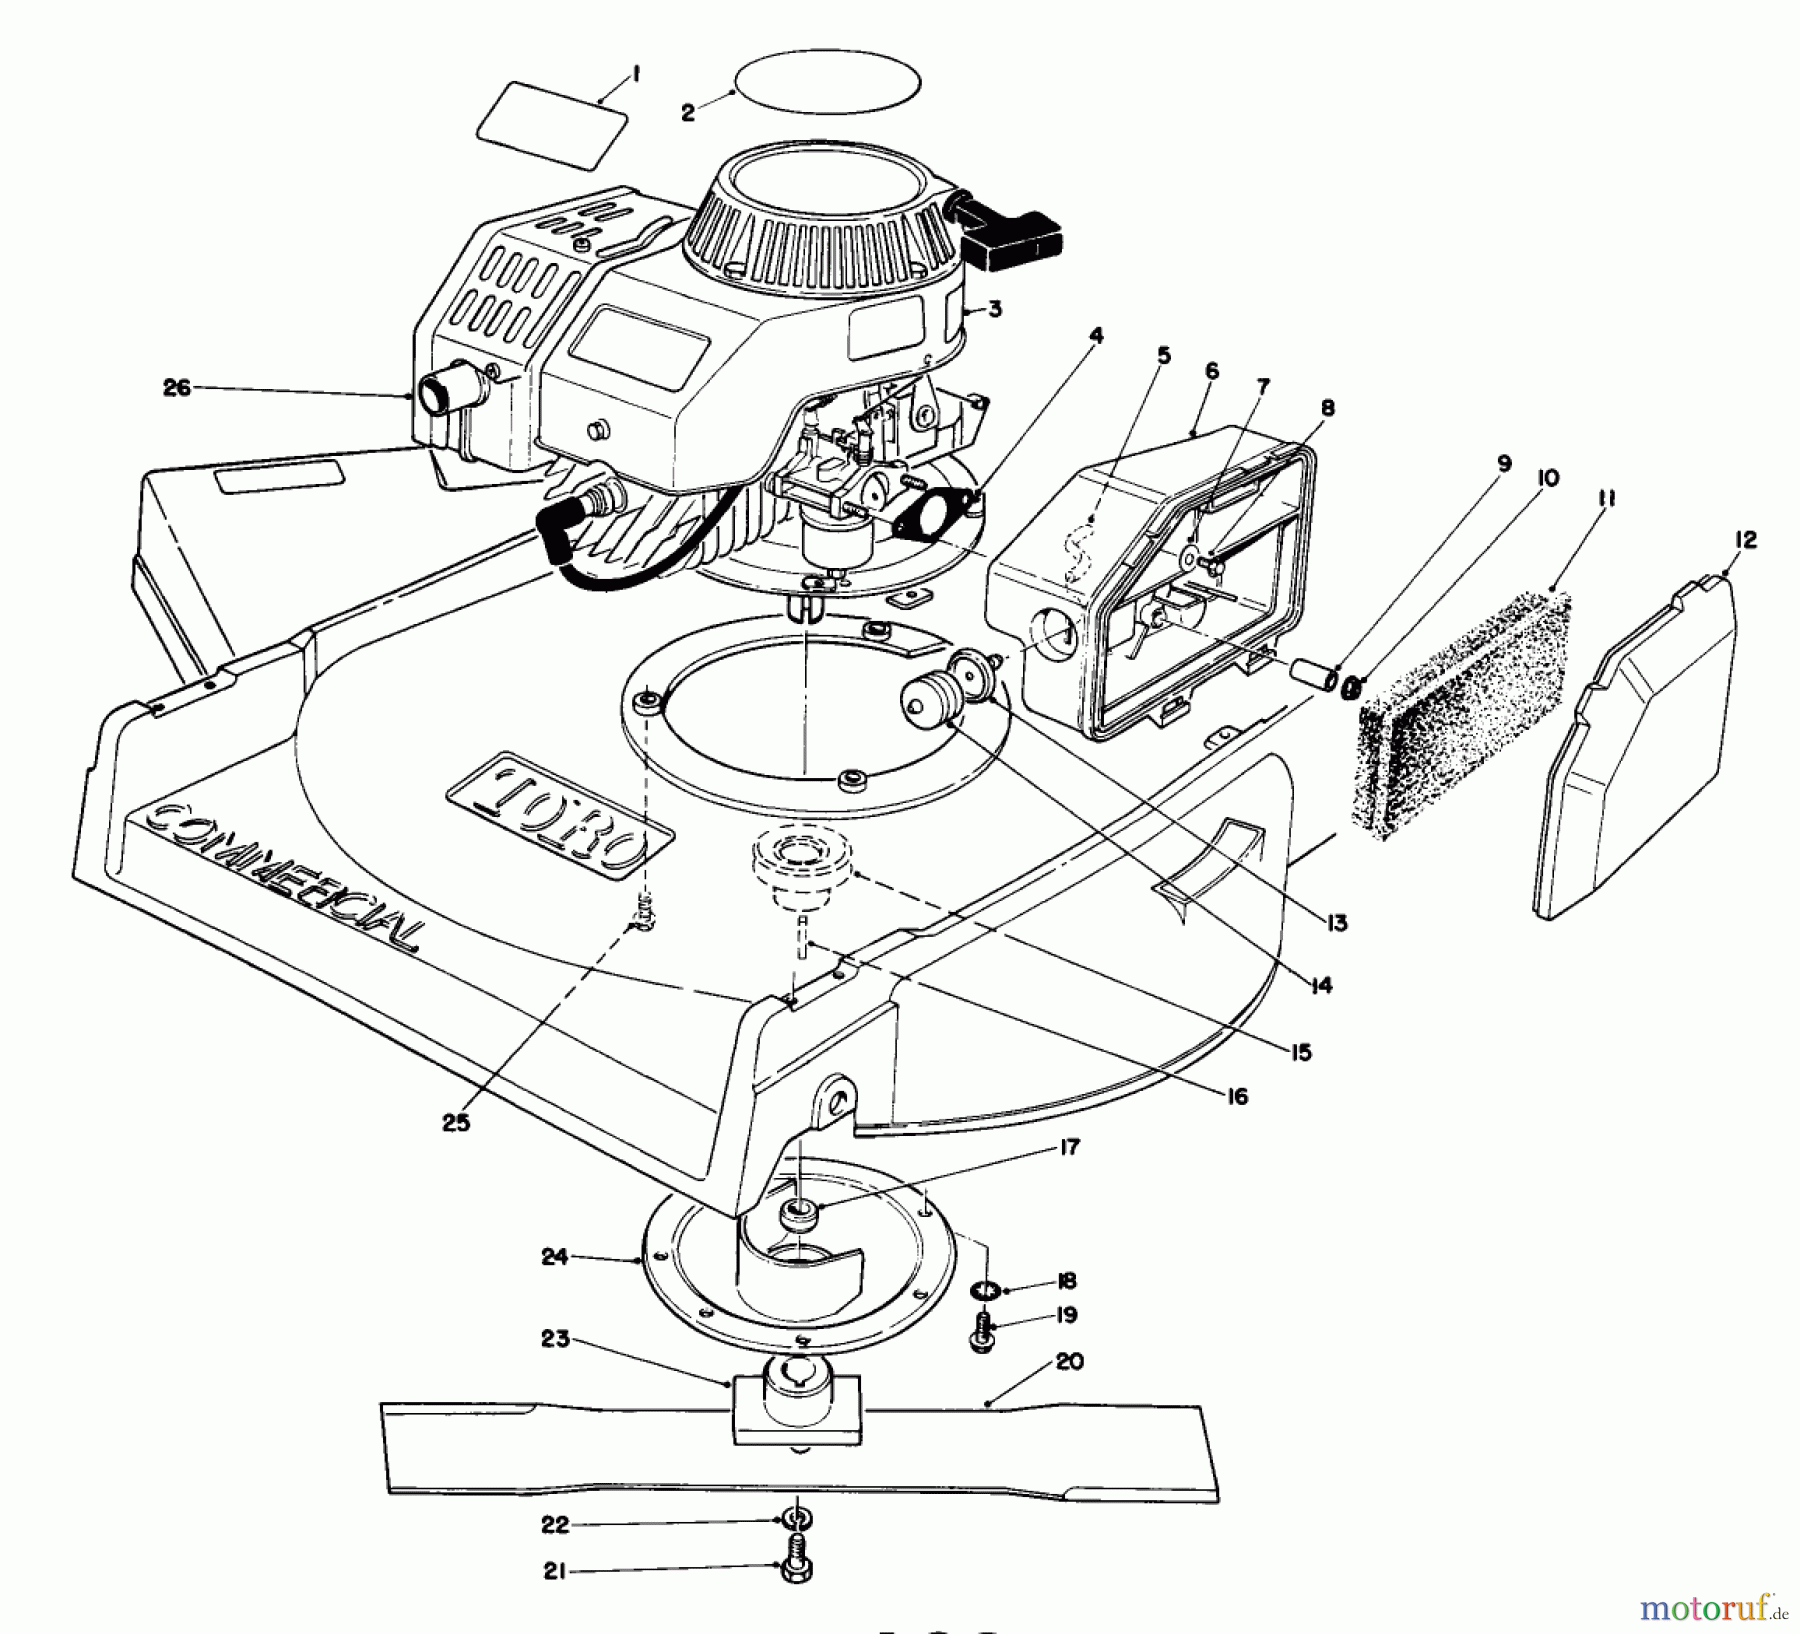  Toro Neu Mowers, Walk-Behind Seite 2 22700 - Toro Lawnmower, 1992 (2000001-2999999) ENGINE ASSEMBLY